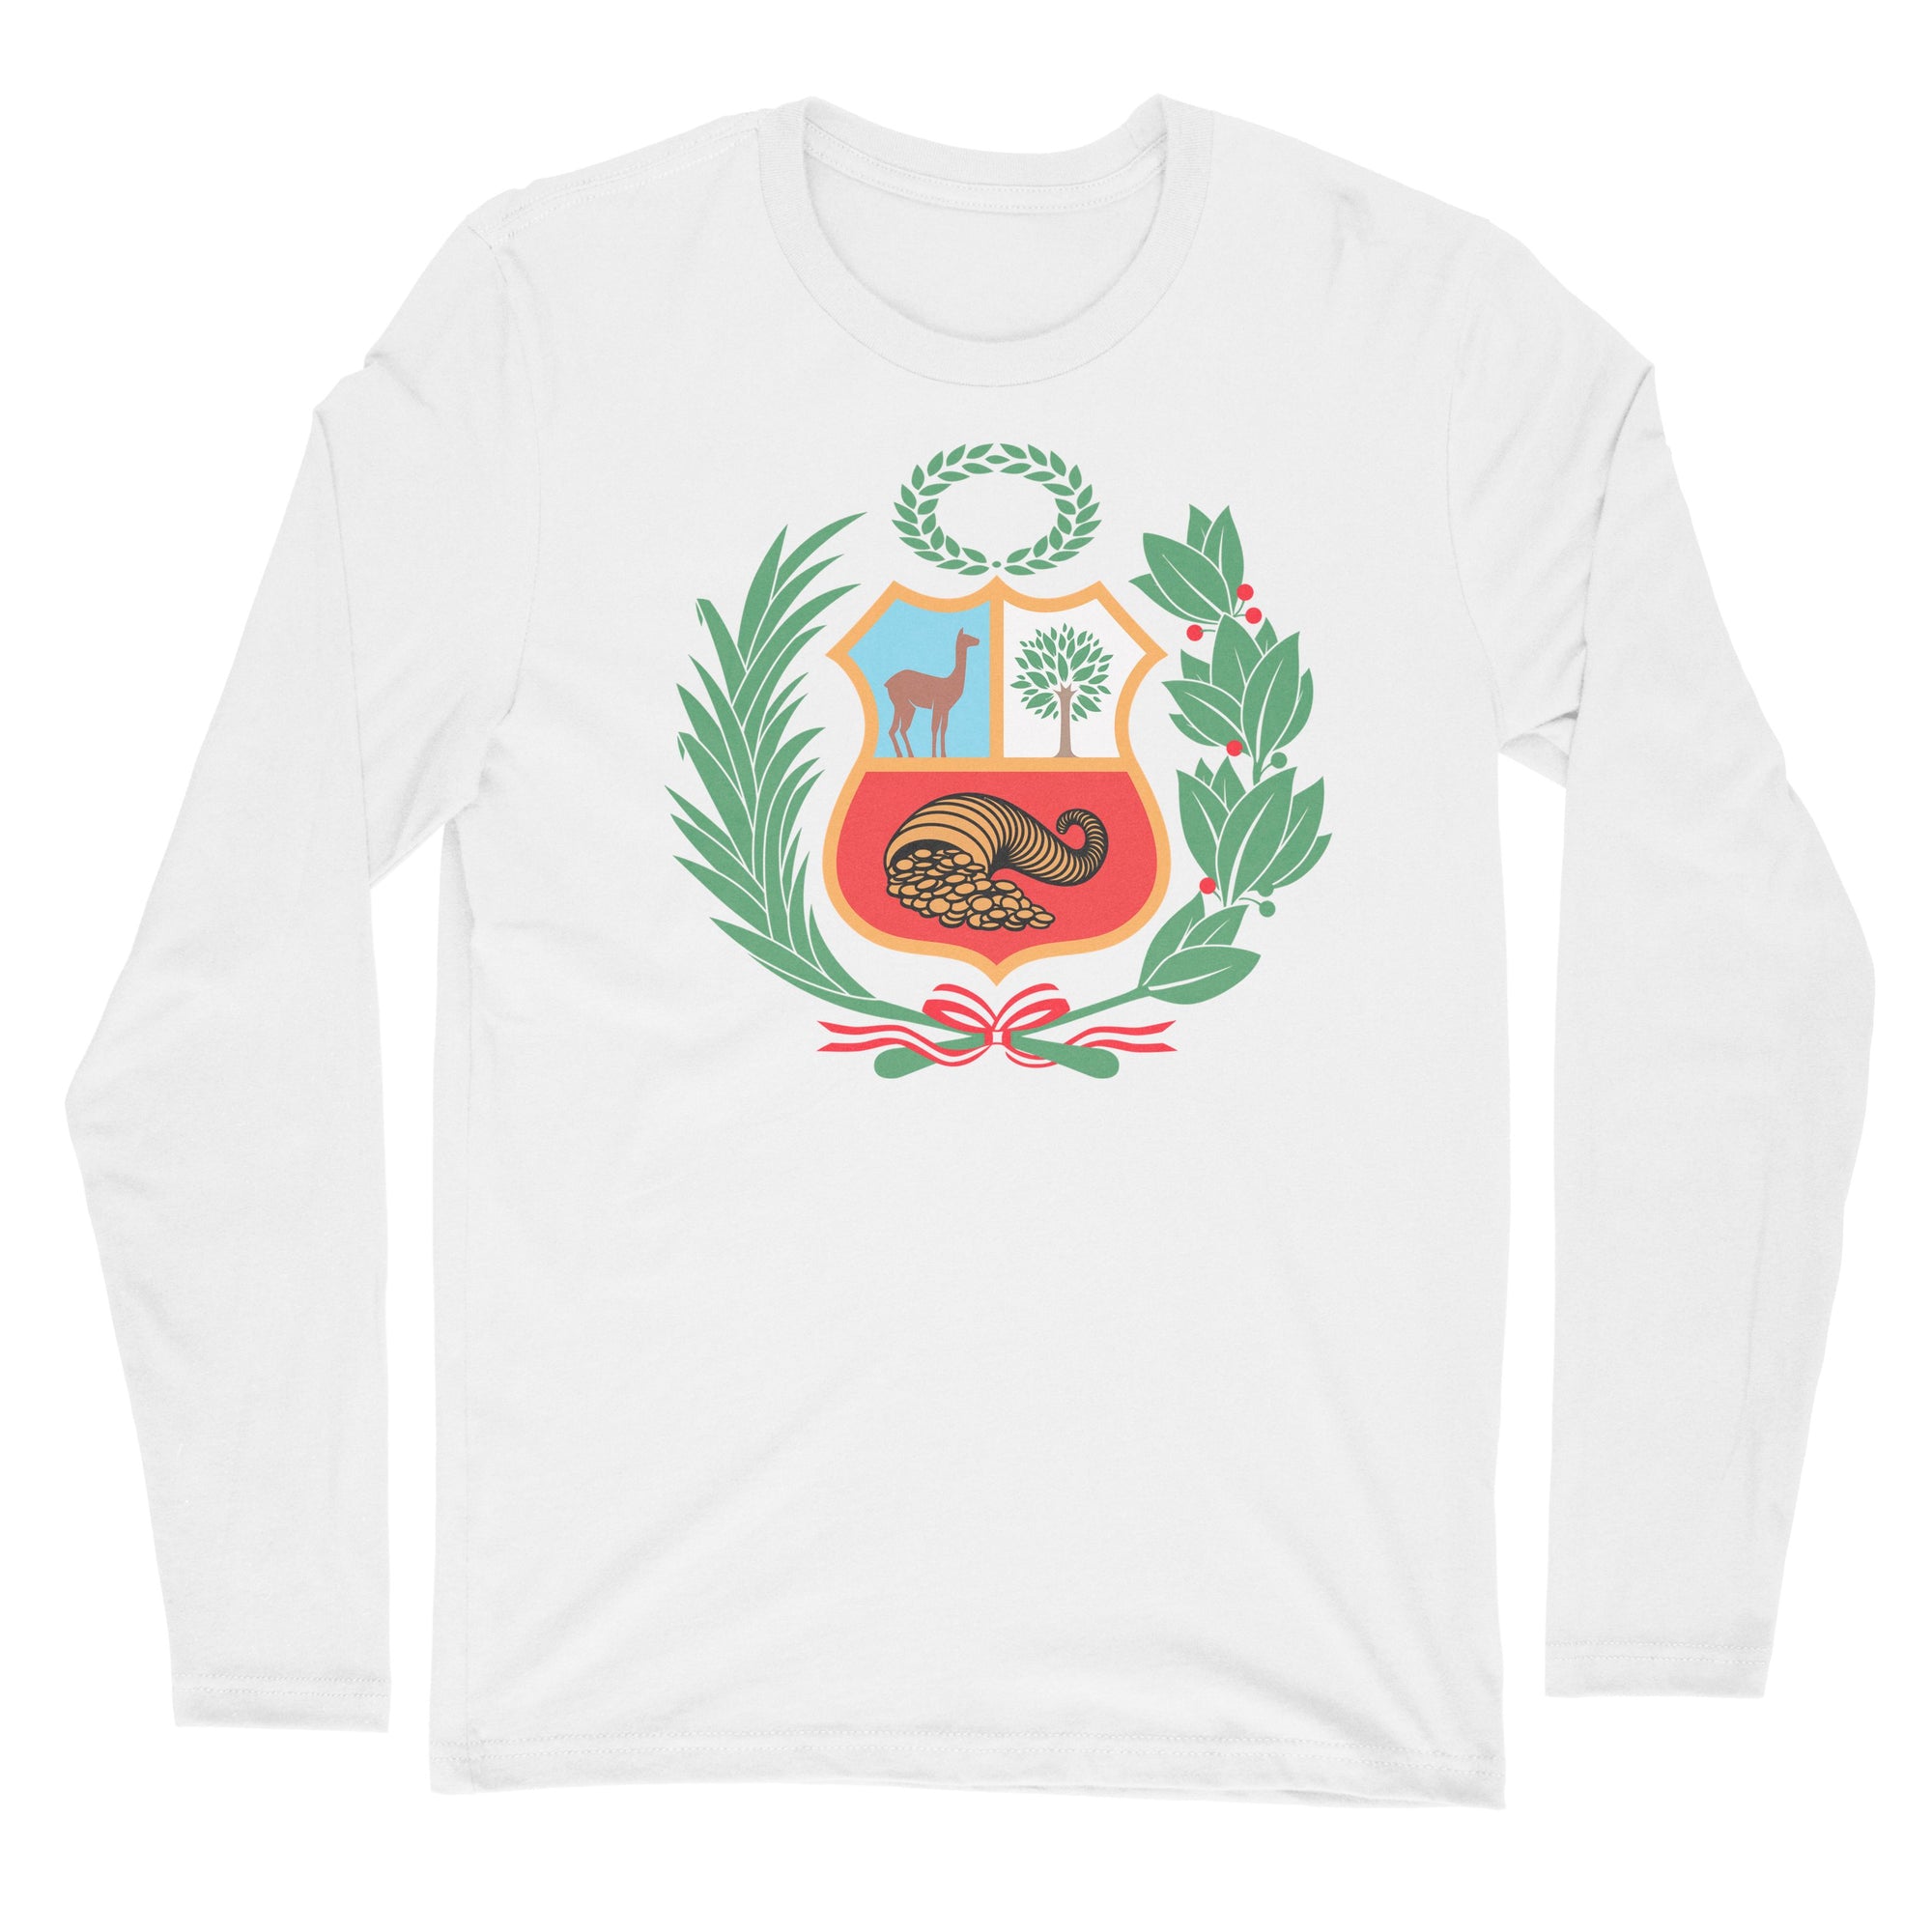 Peru Escudo White Full Color Long Sleeve Crewneck Shirt for Men